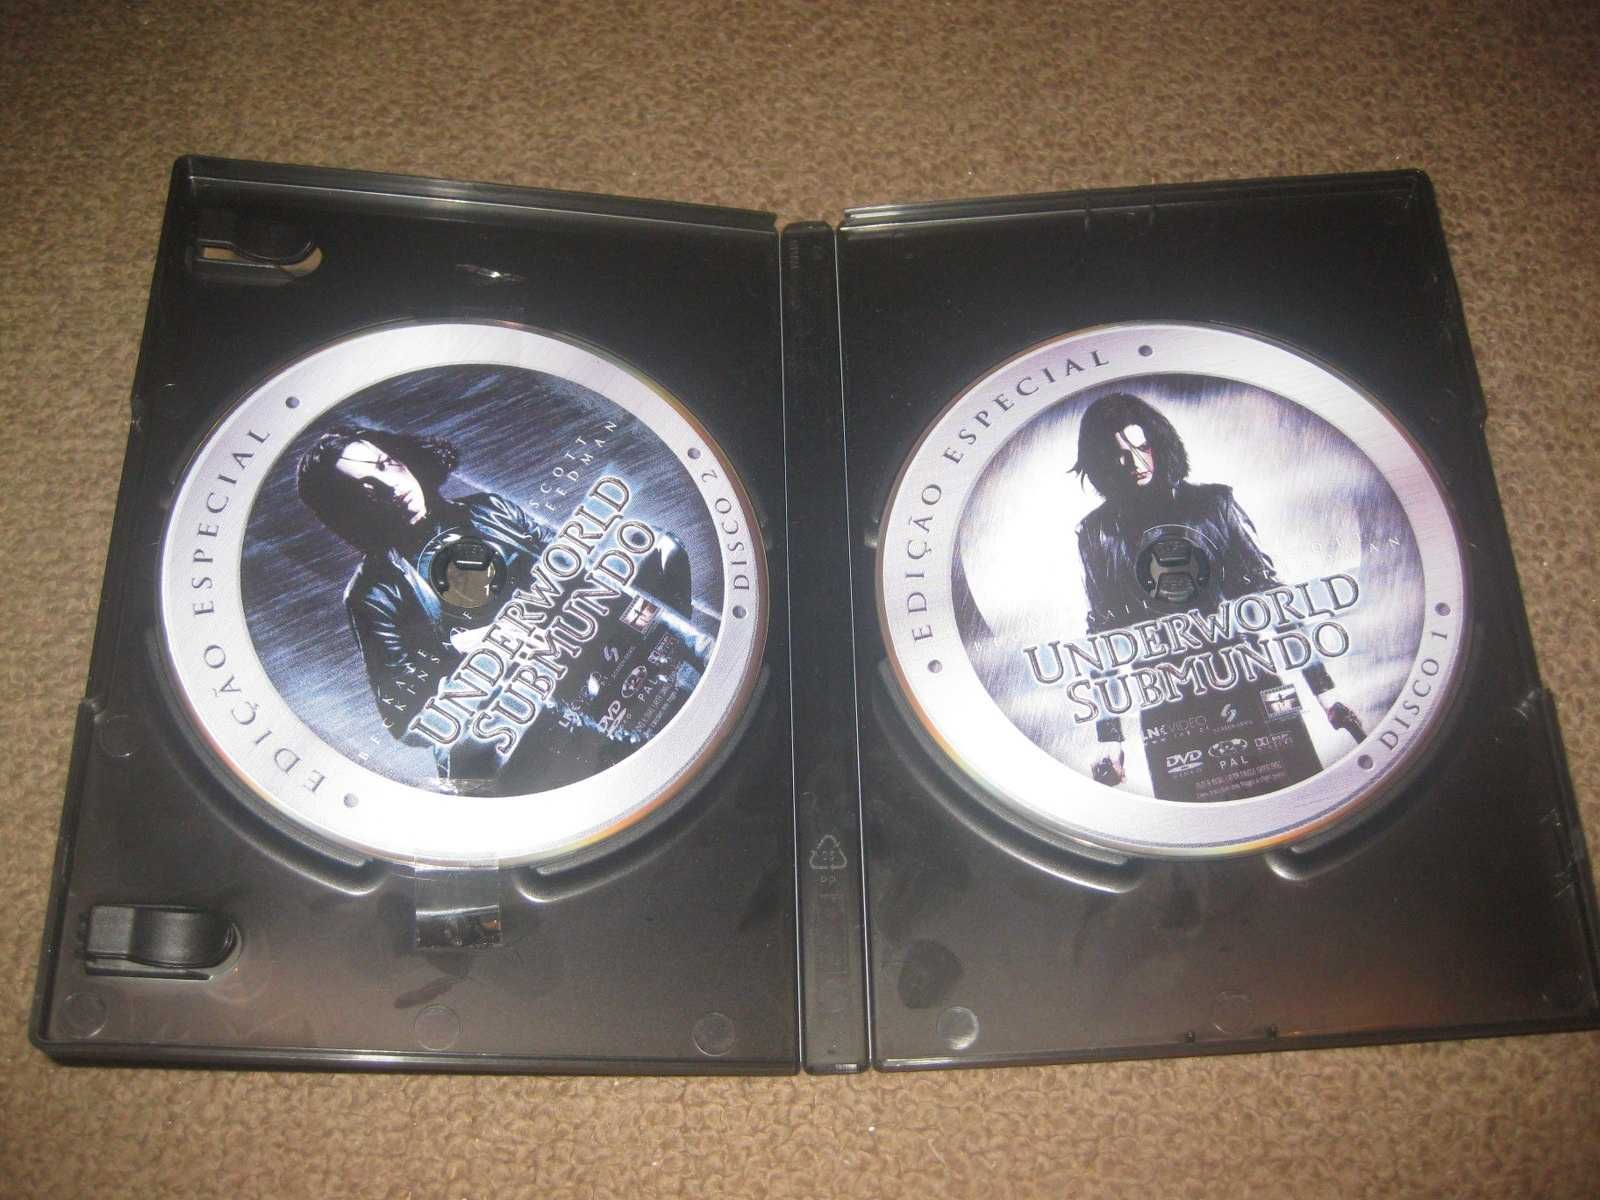 "Underworld - Submundo" numa Edição Especial com 2 DVDs